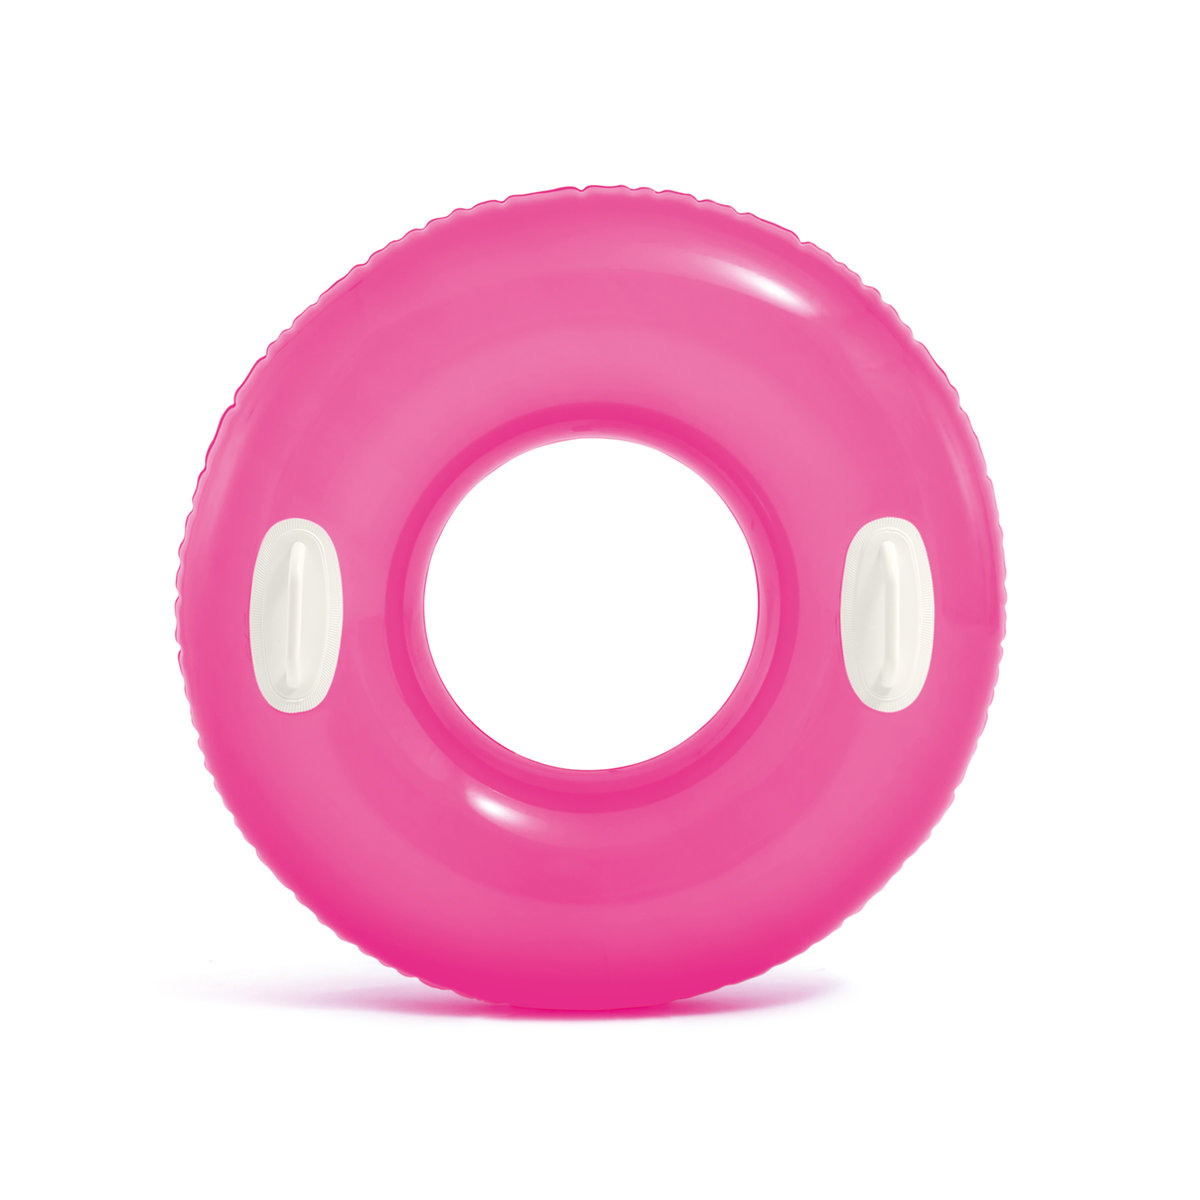 Фото - Іграшка для купання Intex Koło do pływania kółko plażowe z uchwytami różowe  59258 